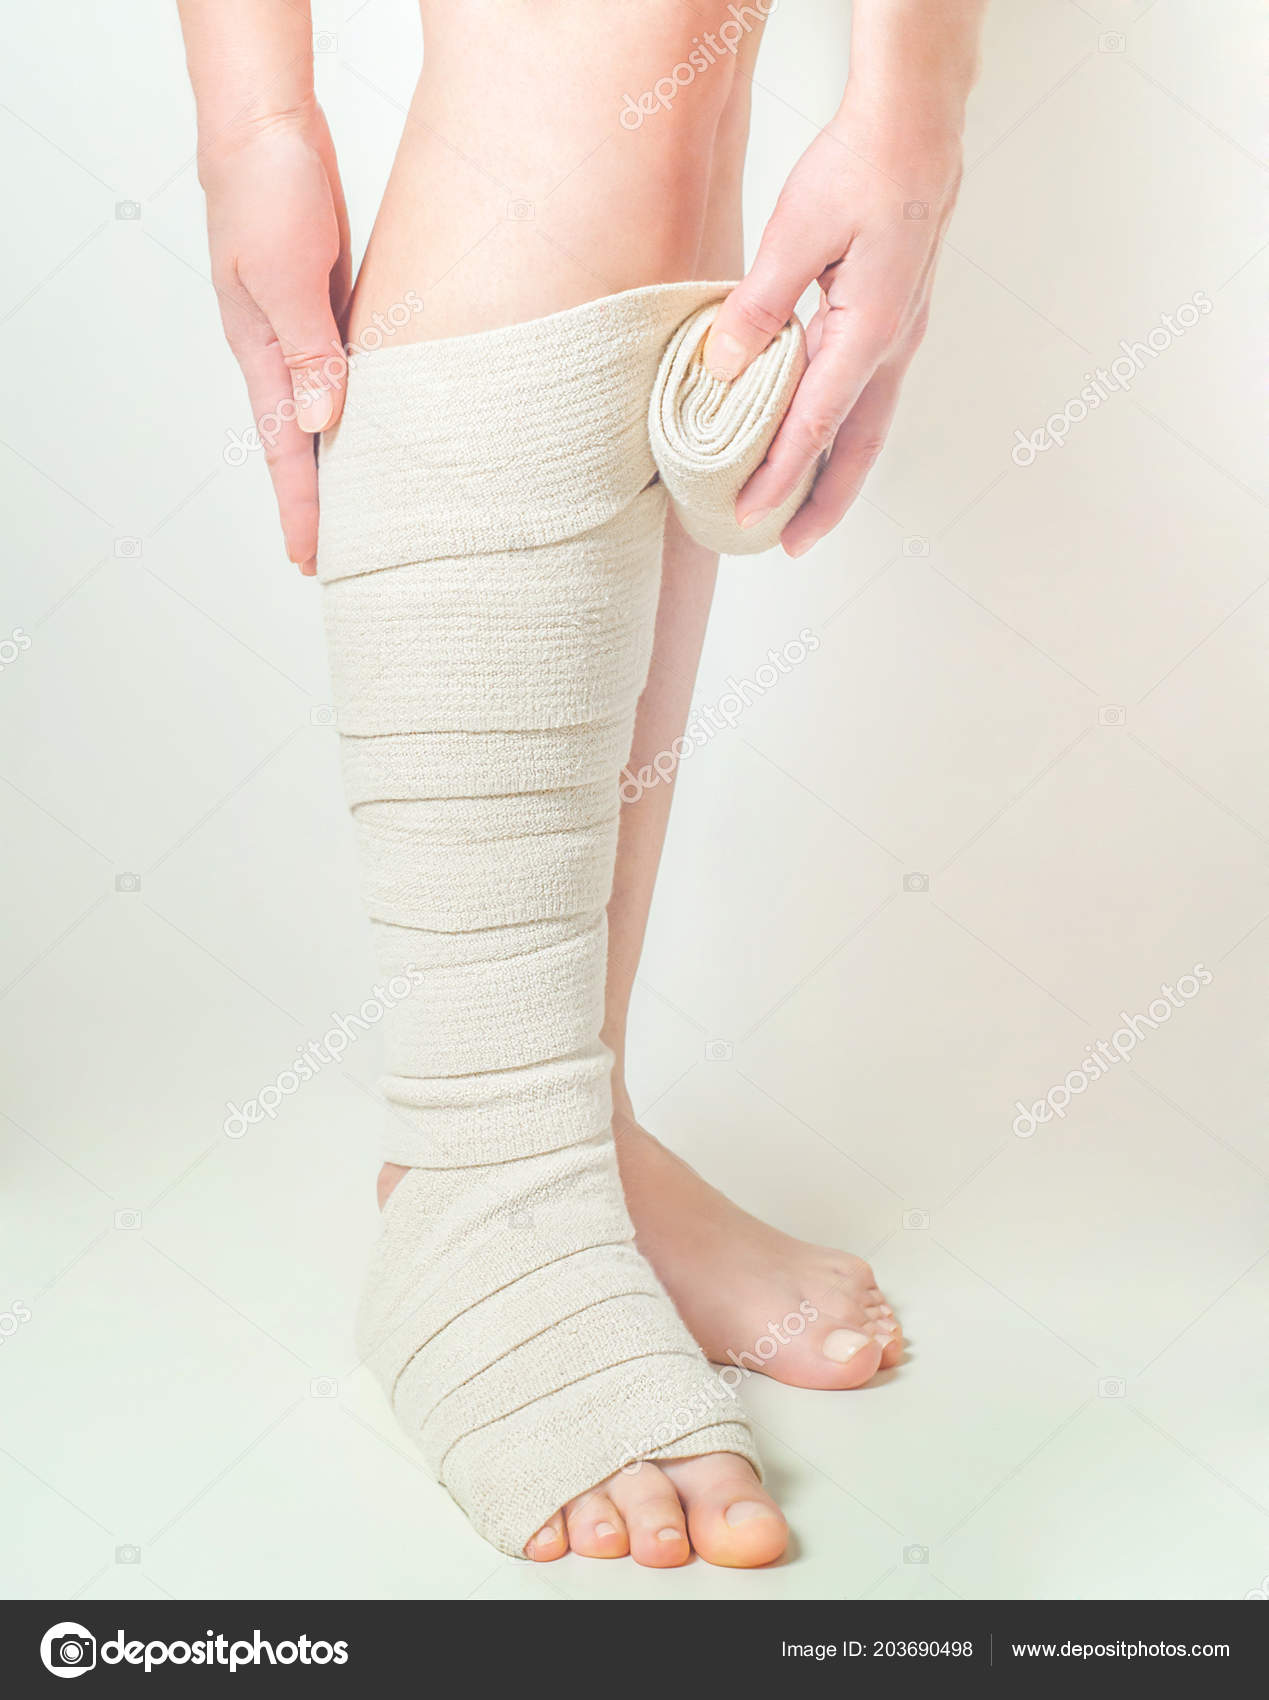 bandage elastica varicoza)